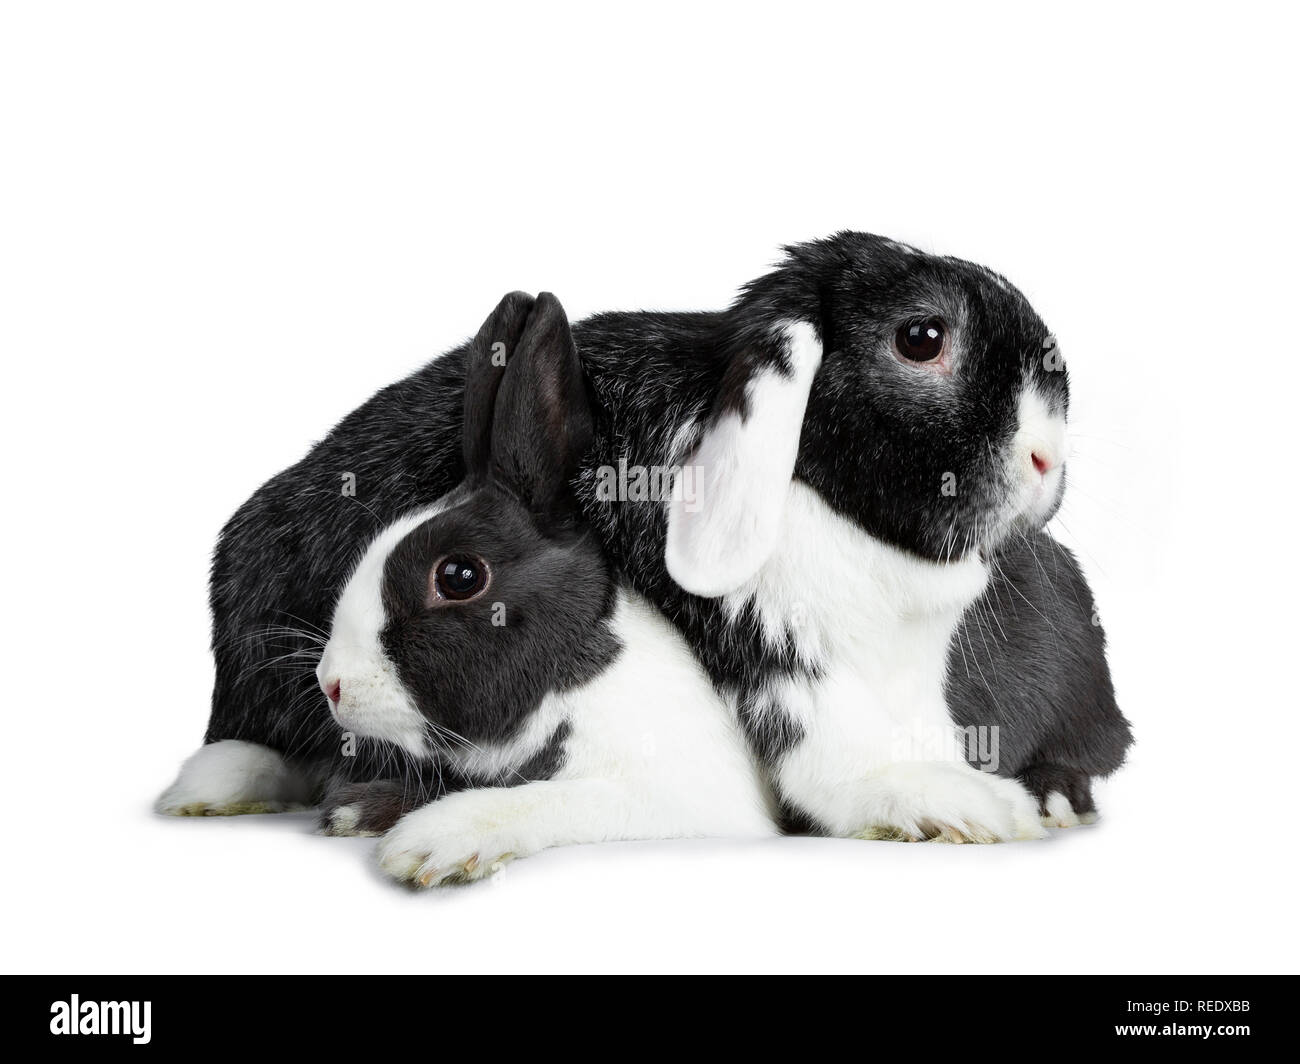 Weibliche grau mit weißen Europäischen Kaninchen süß und männlich schwarz mit weißen Lop ear Freund tapfer. Zur Festlegung über einander. Auf weissem Hintergrund. Stockfoto